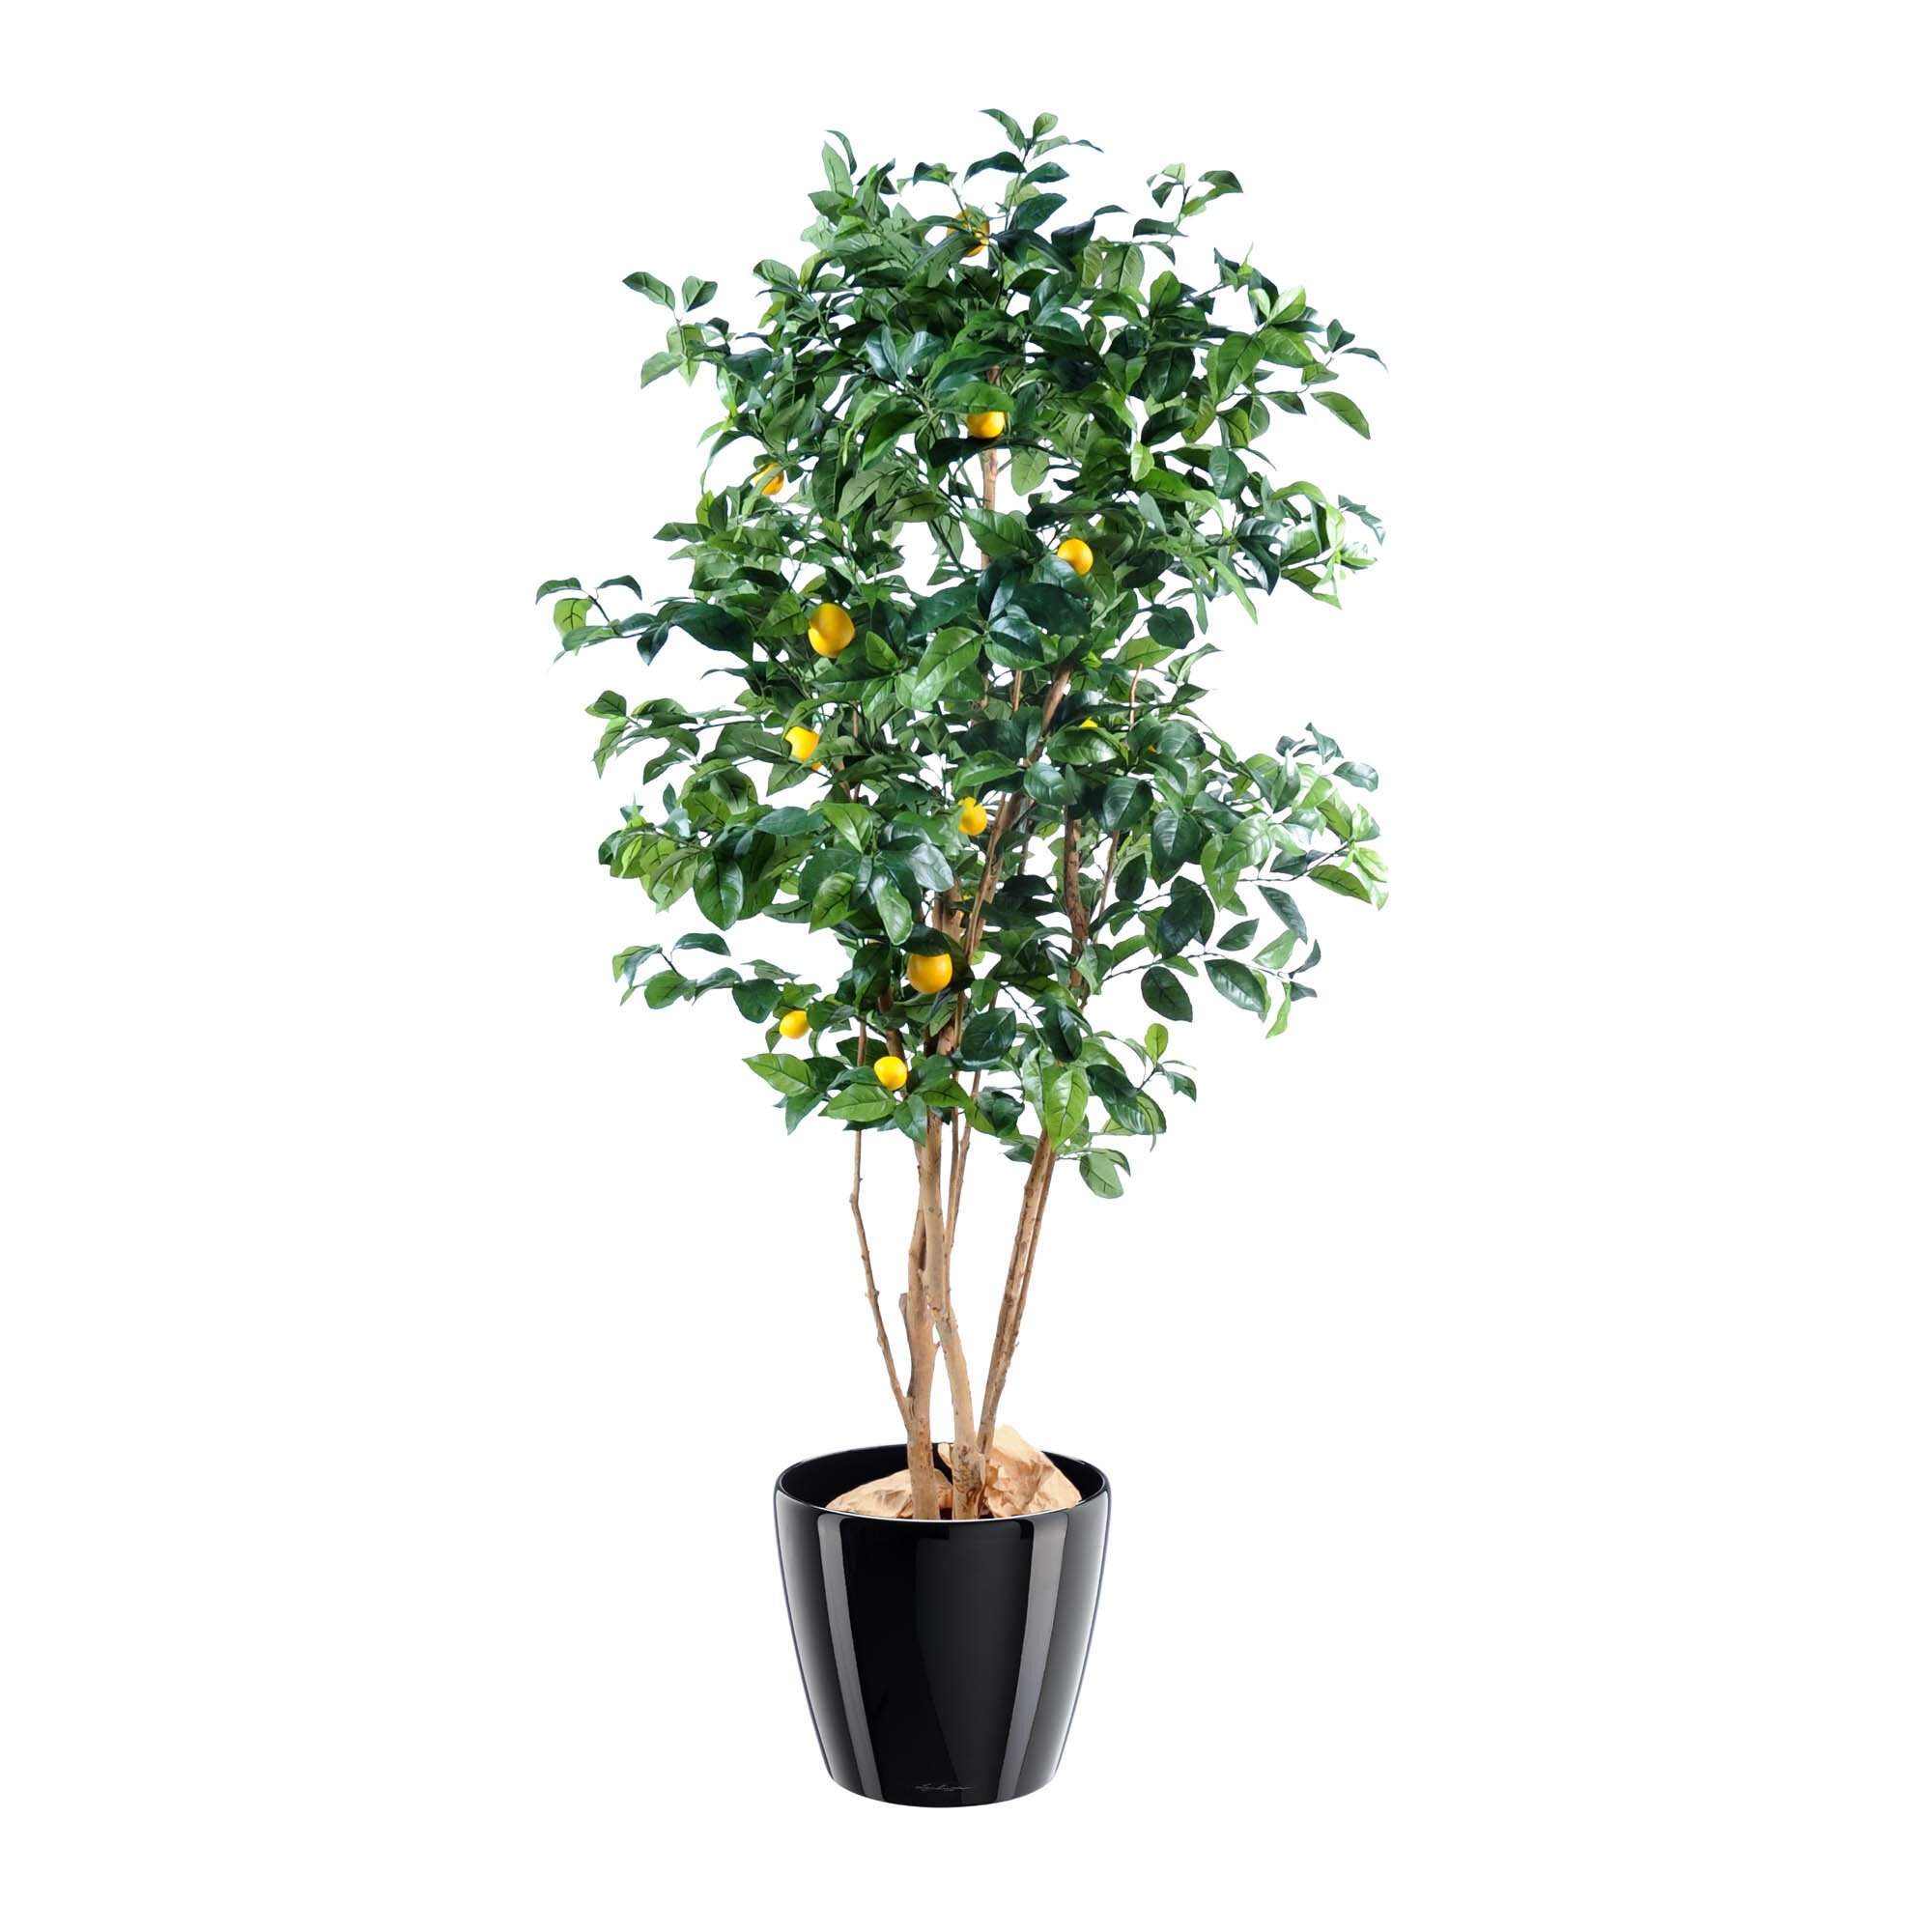 Künstliche Zimmerpflanze Zitronenbaum 180 cm